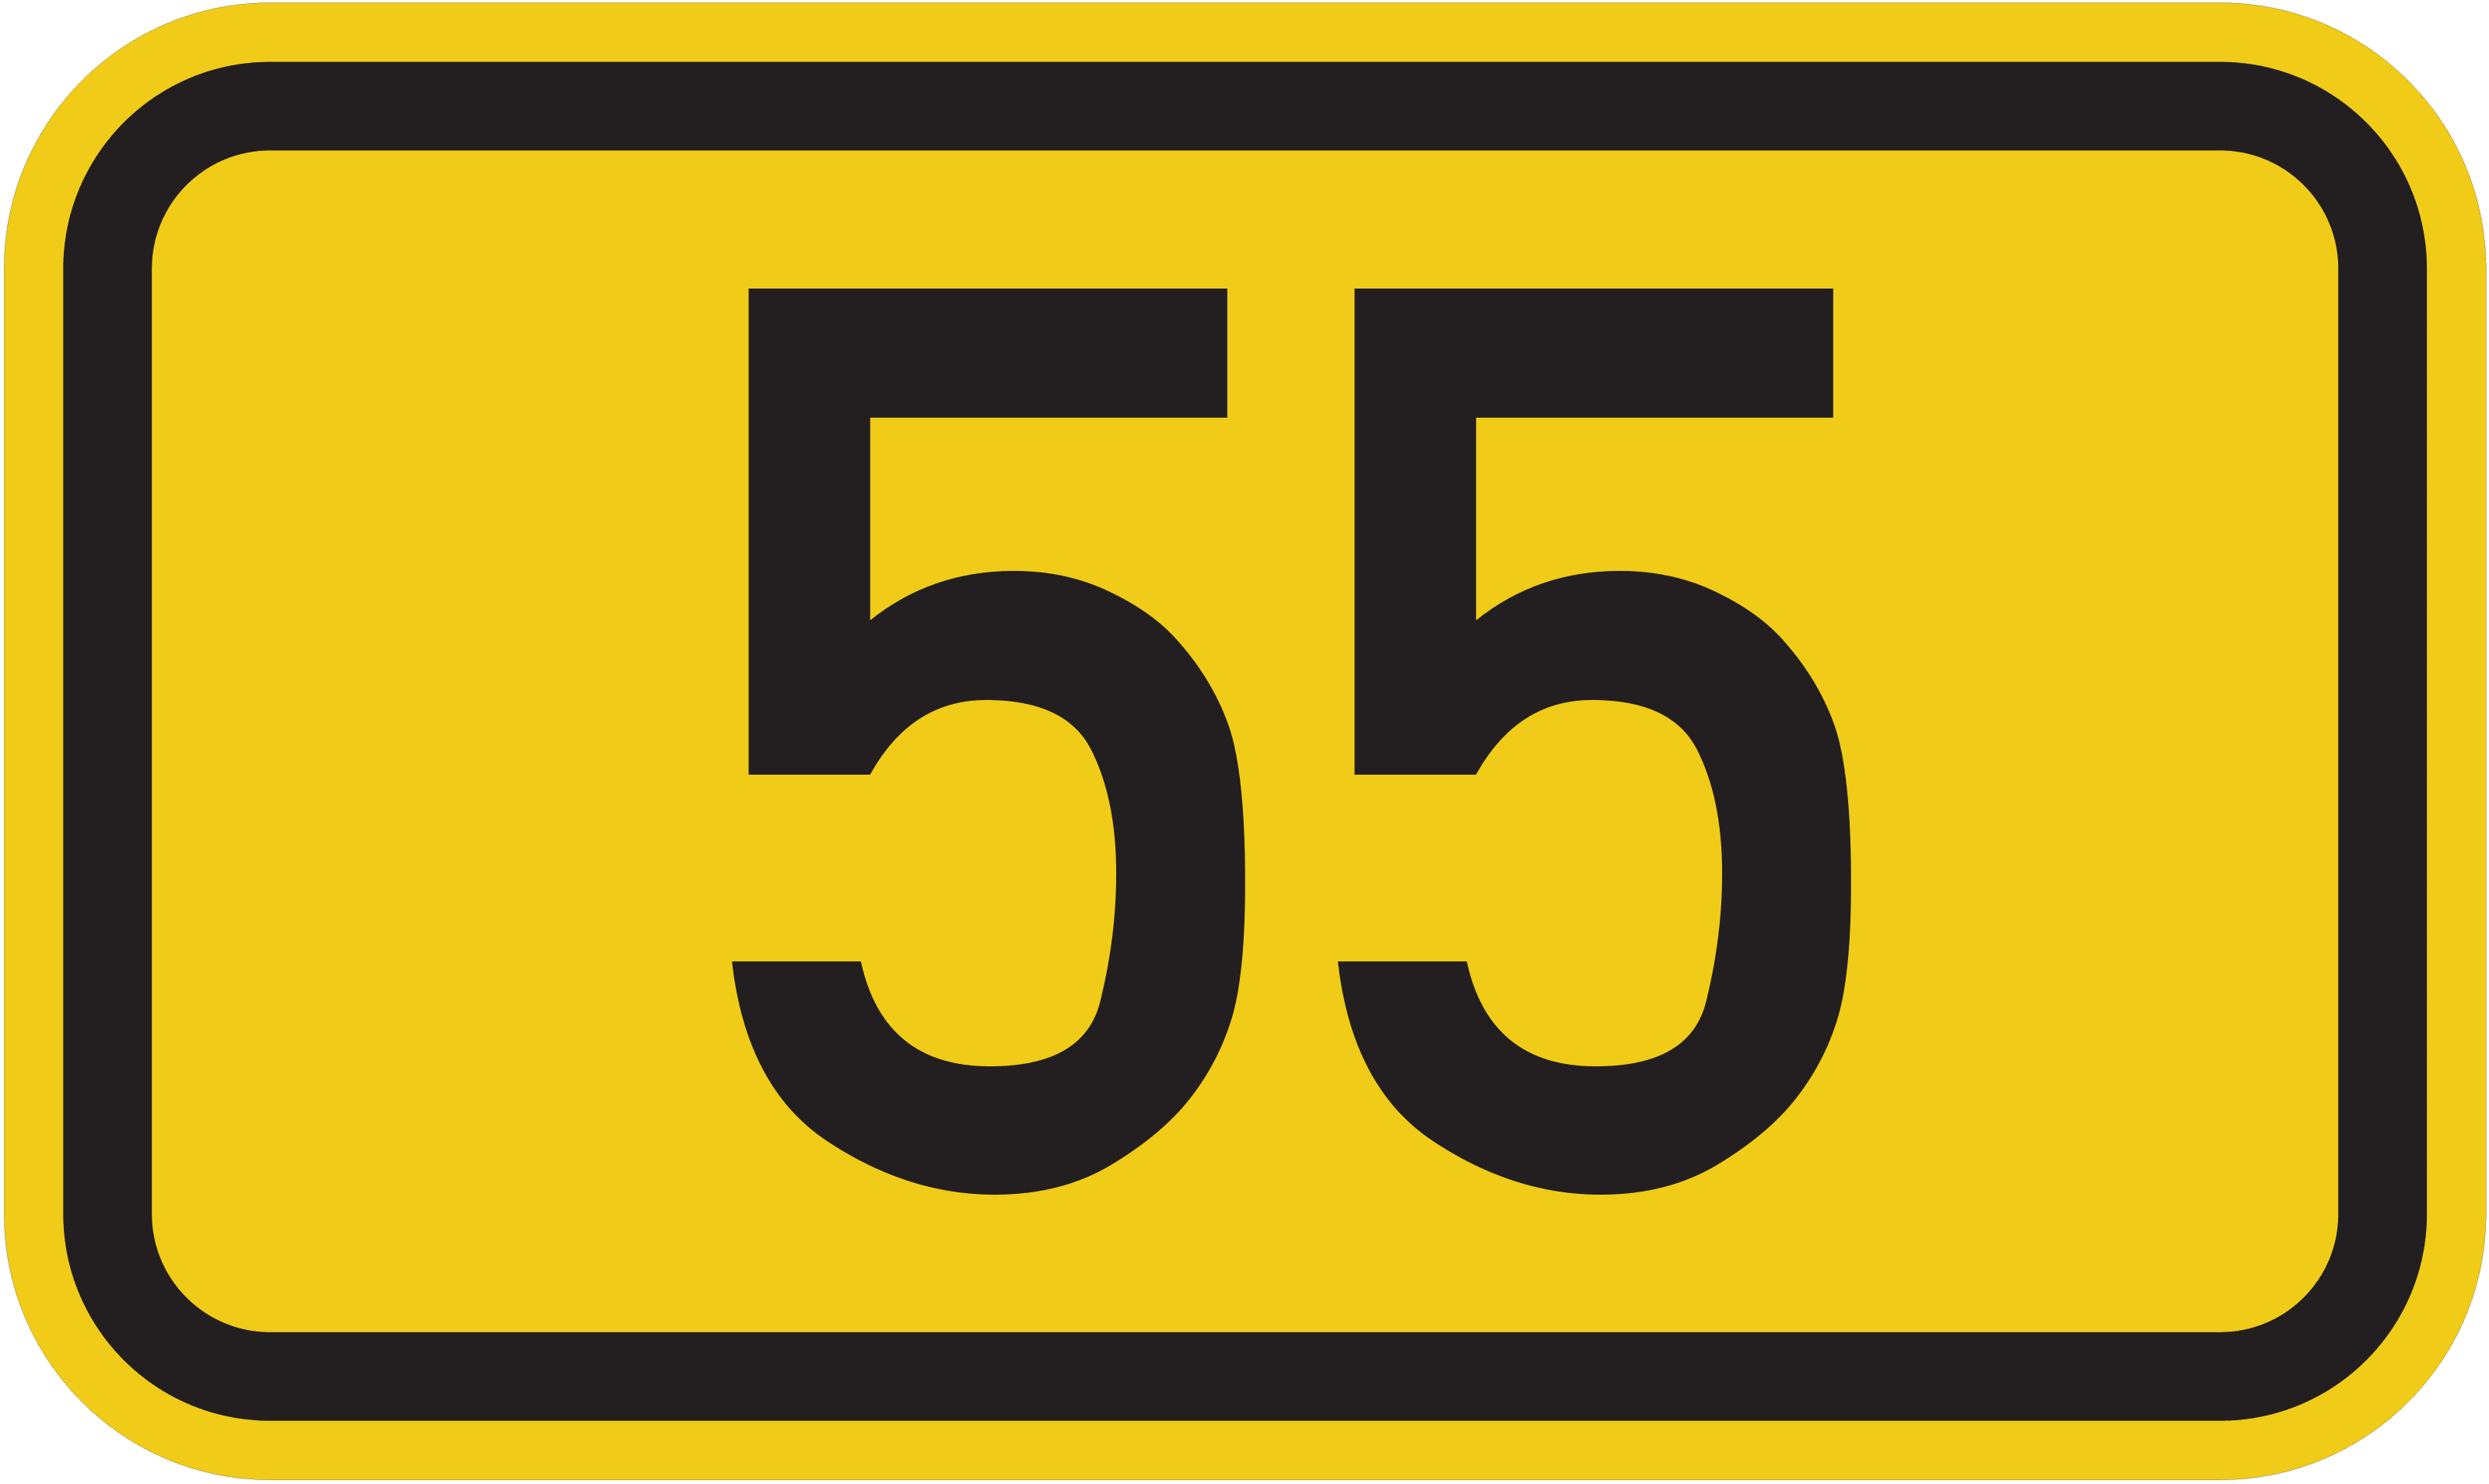 Bundesstraße 55